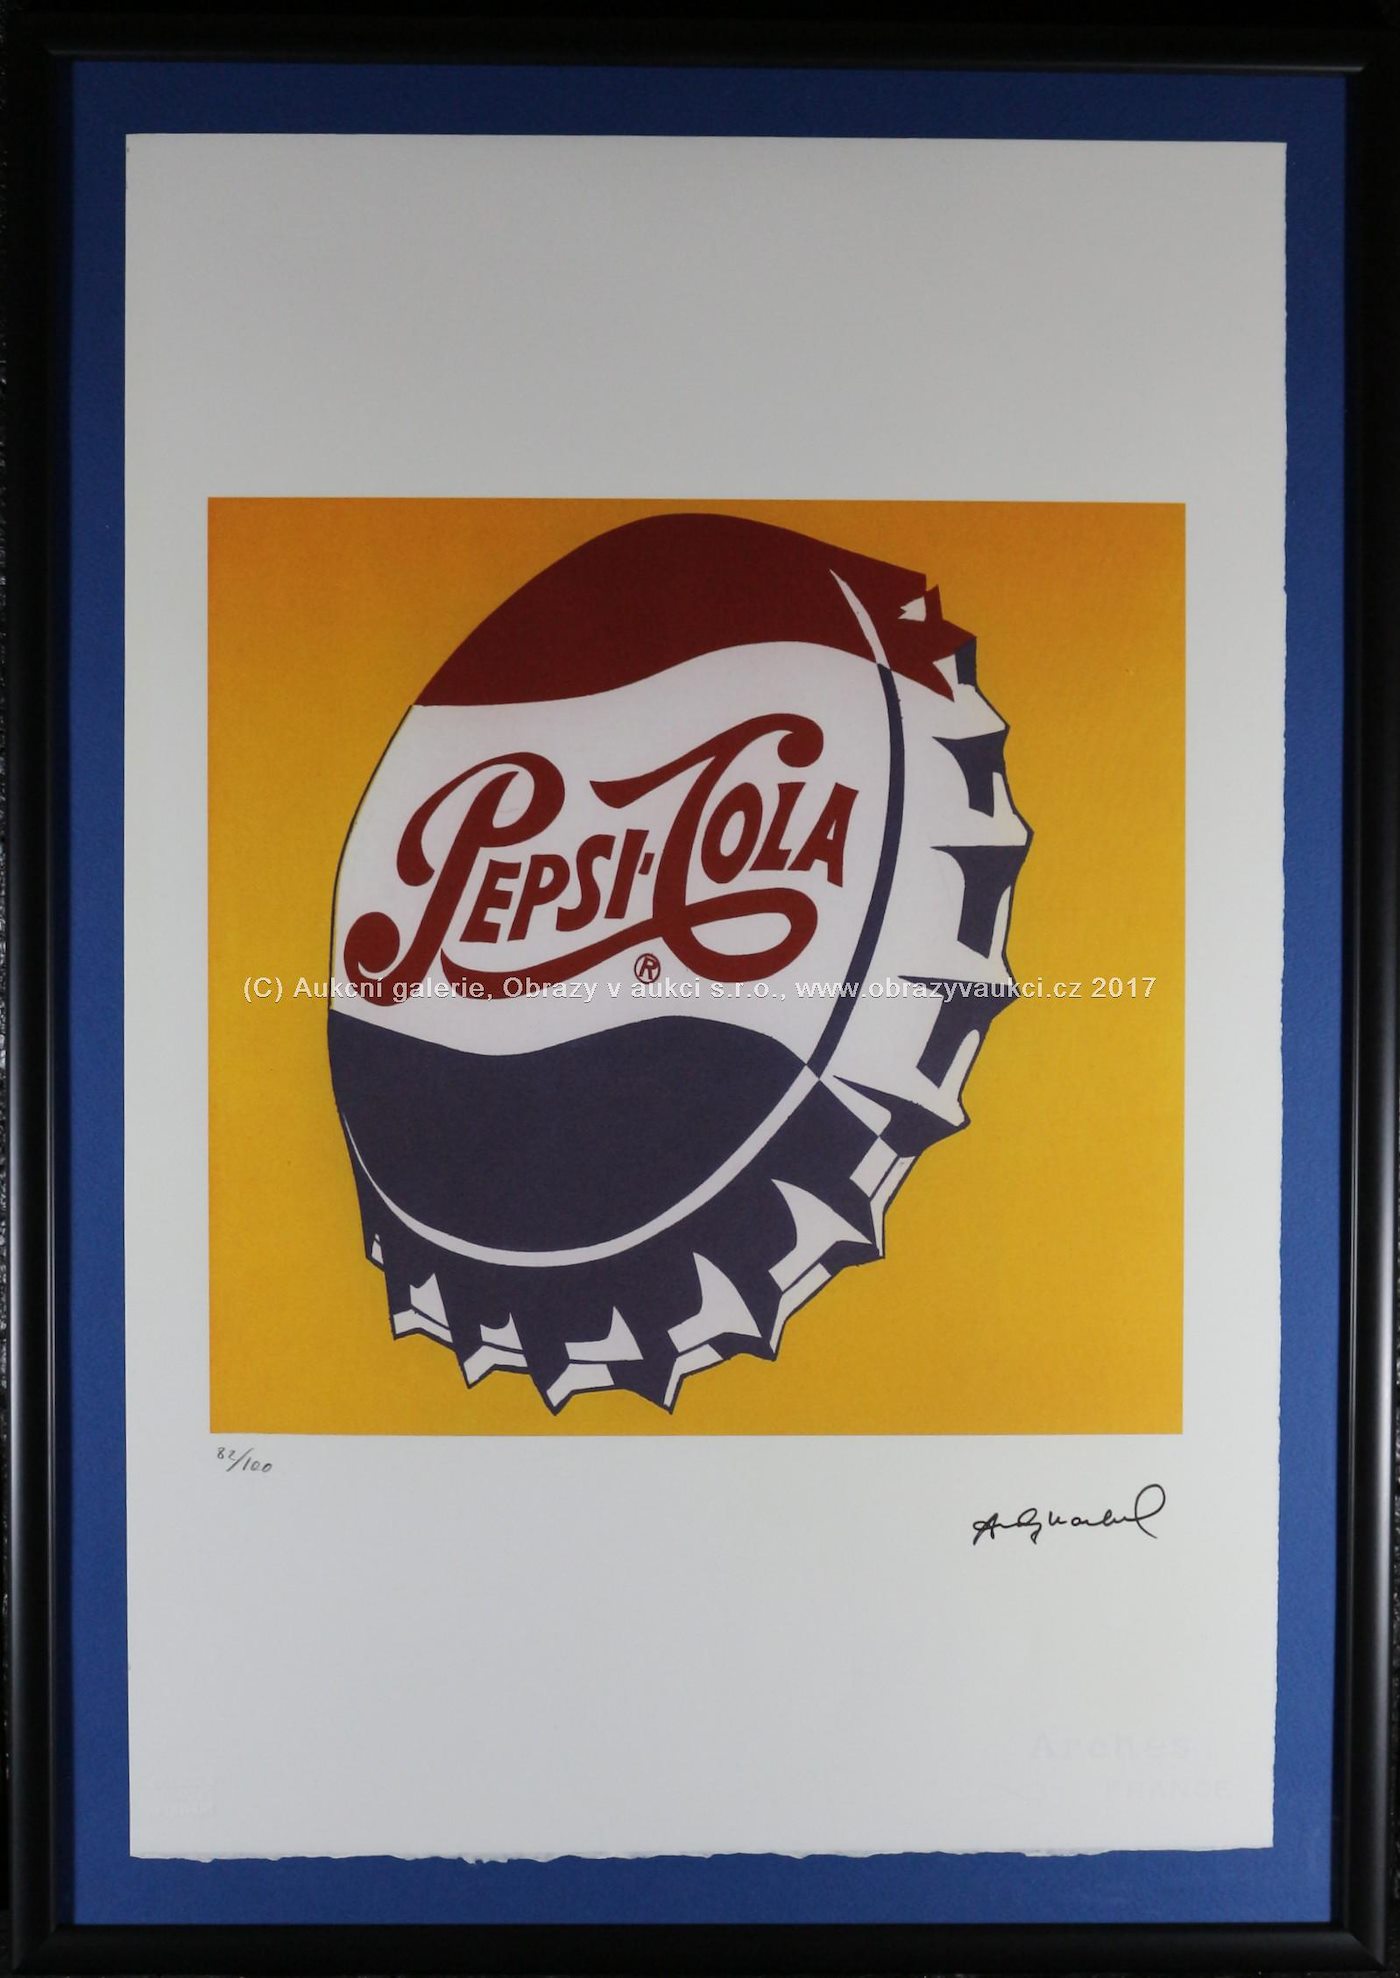 Andy Warhol - Pepsi - Cola